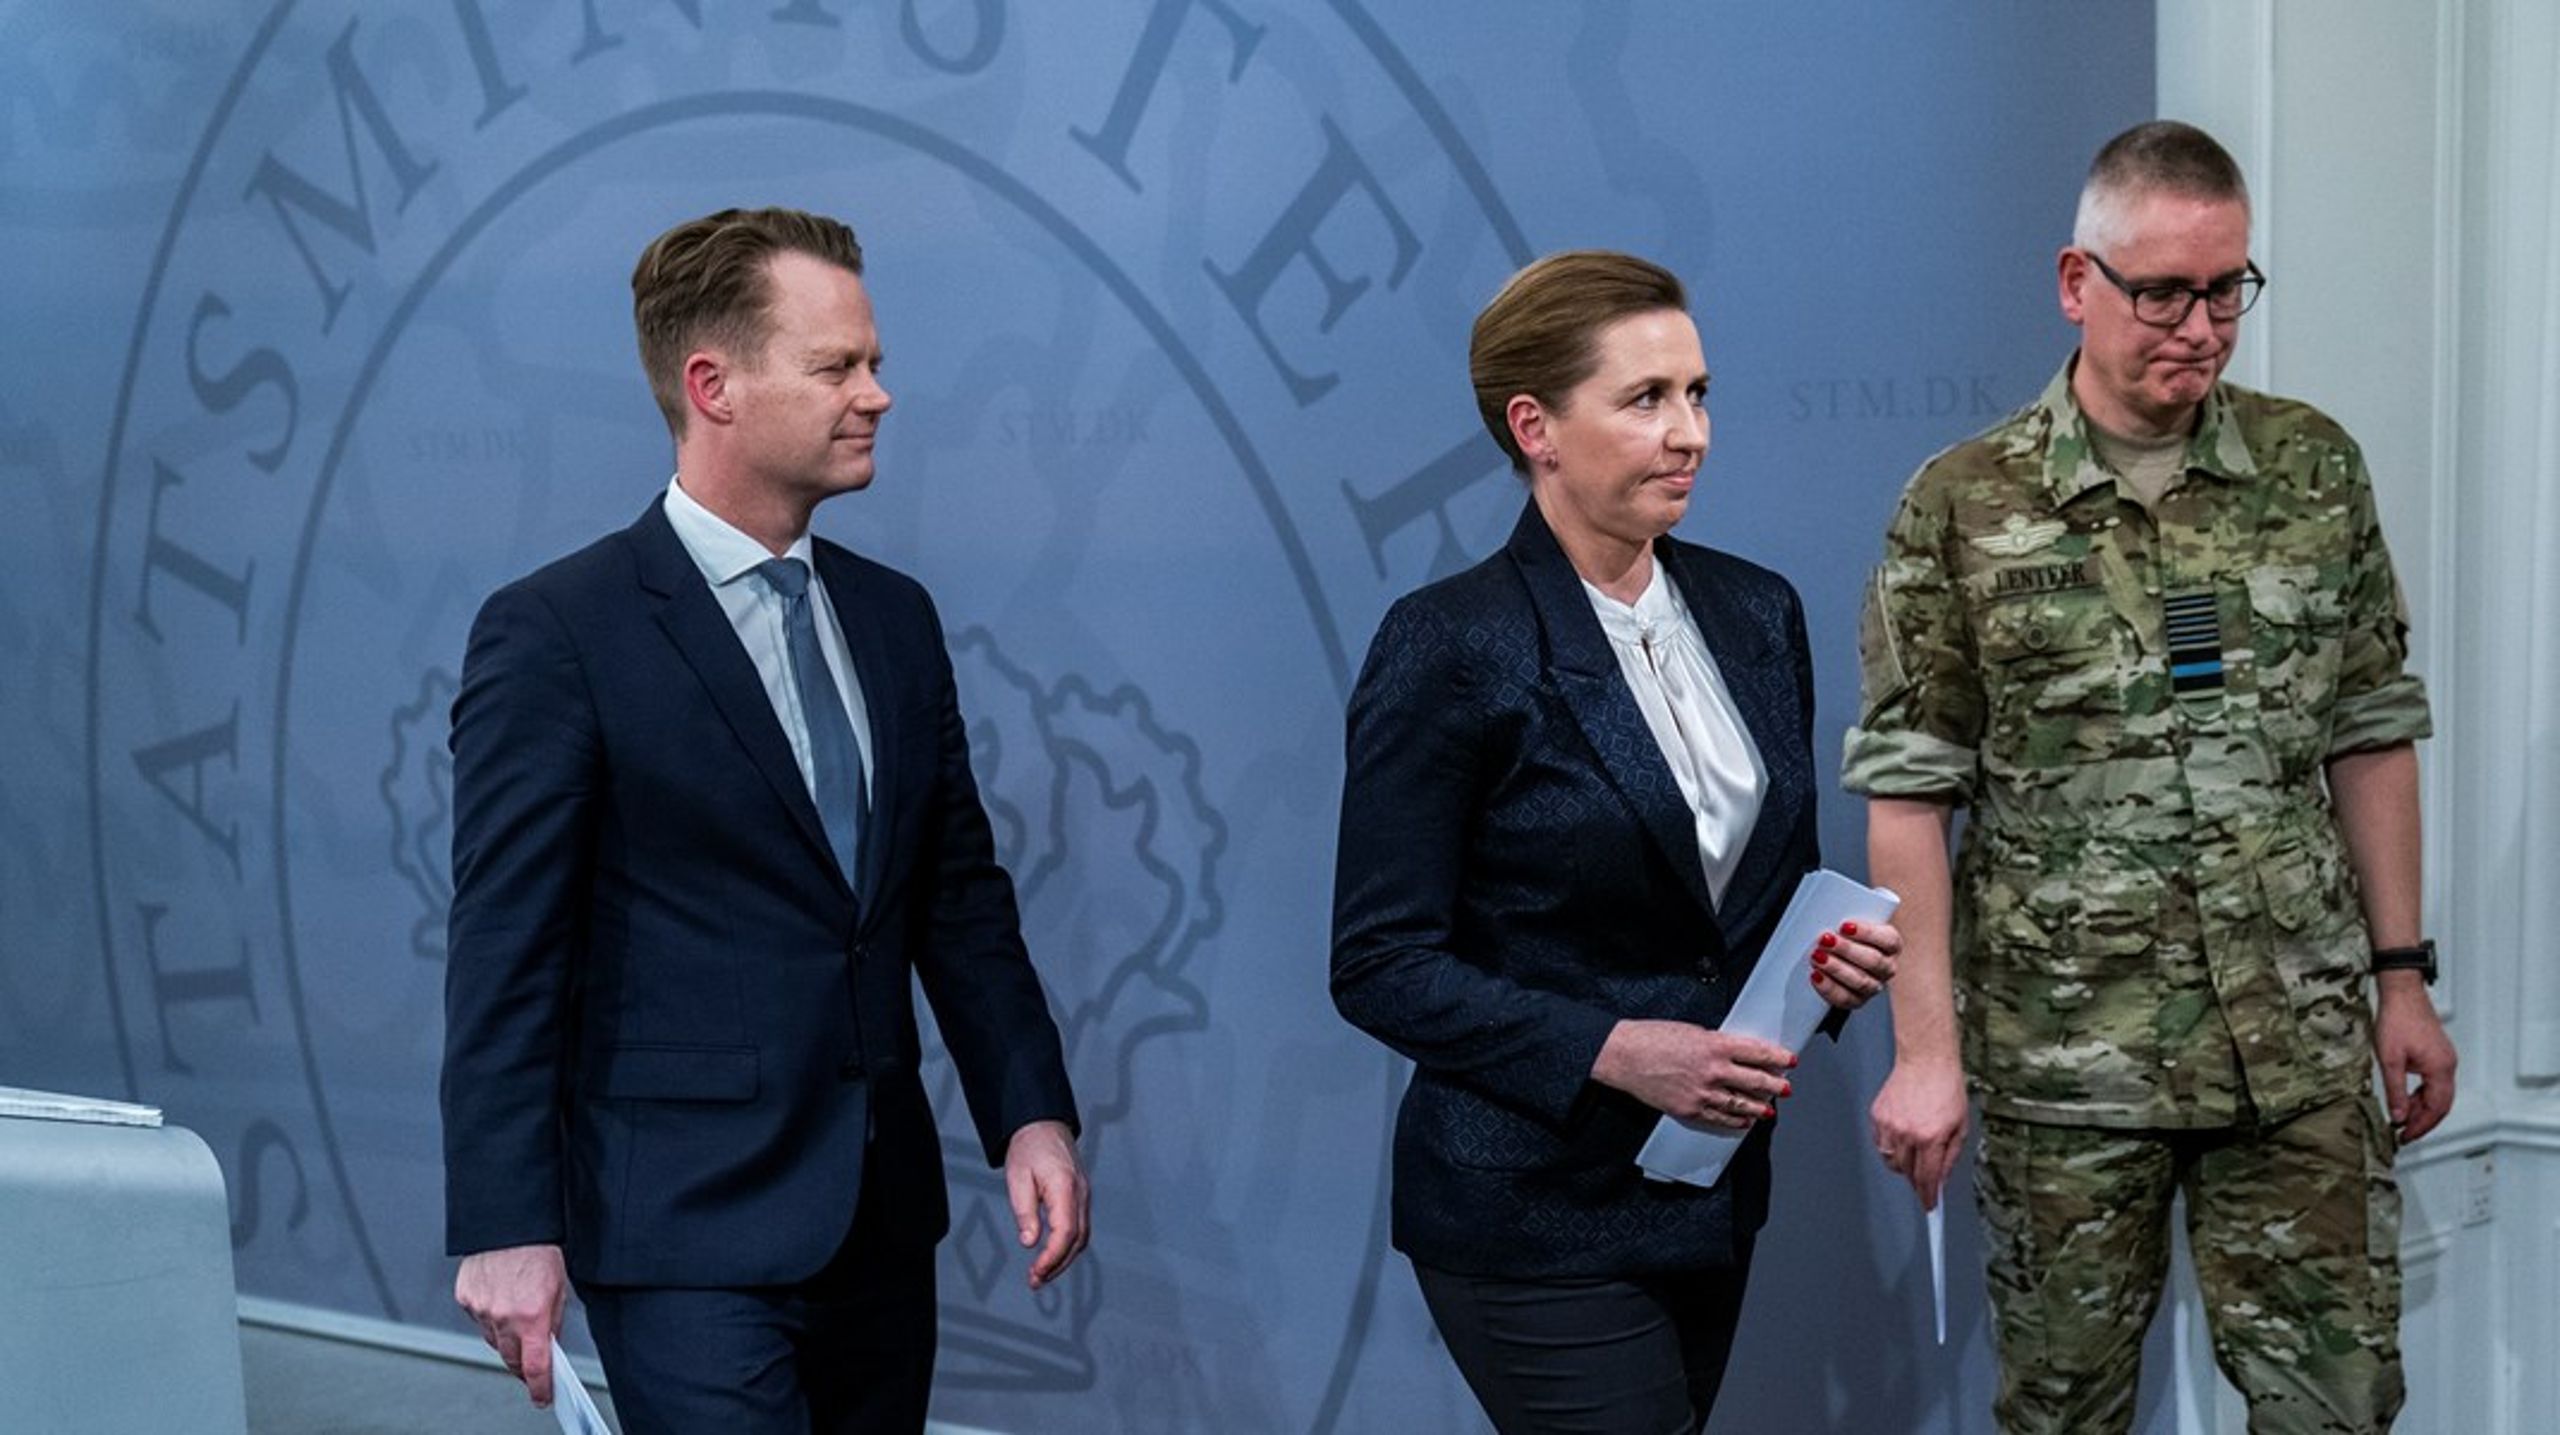 Regeringen bør allerede&nbsp;nu forberede en folkeafstemning om afskaffelse af det danske forsvarsforbehold, skriver Martin Lidegaard.